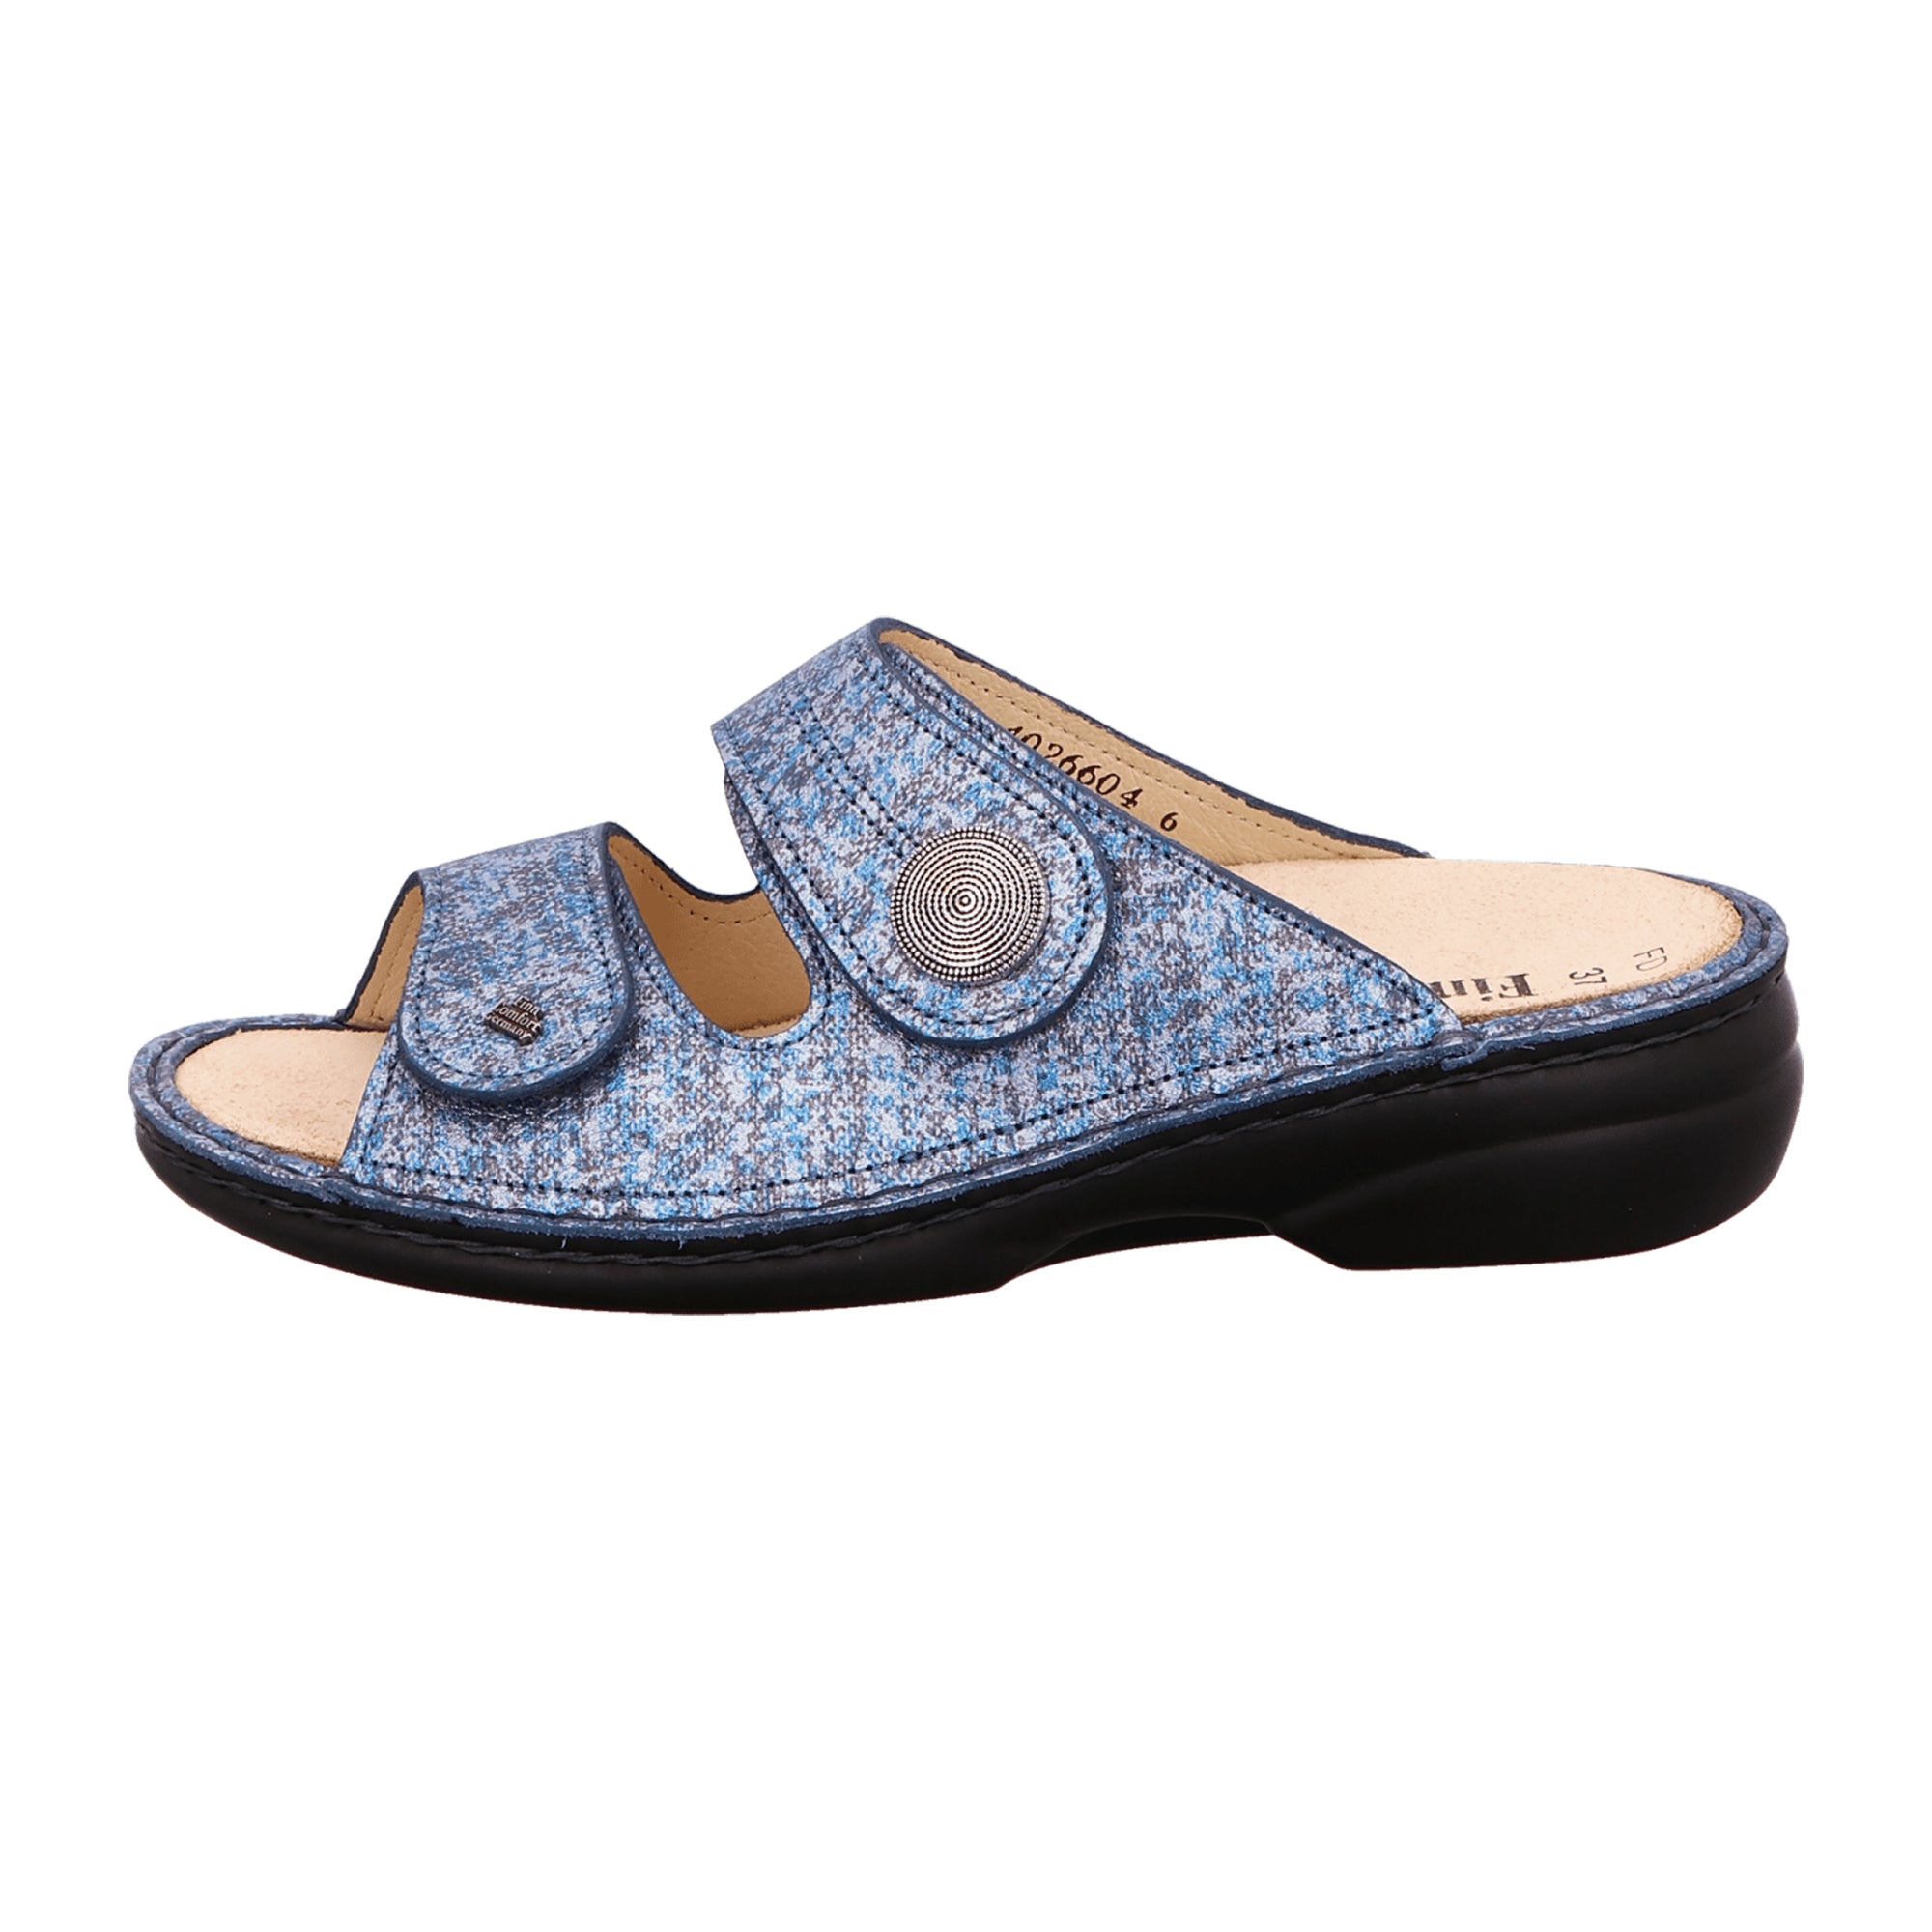 Finn Comfort Sansibar Women's Slides - Blue Leather Comfort Sandals with Adjustable Straps